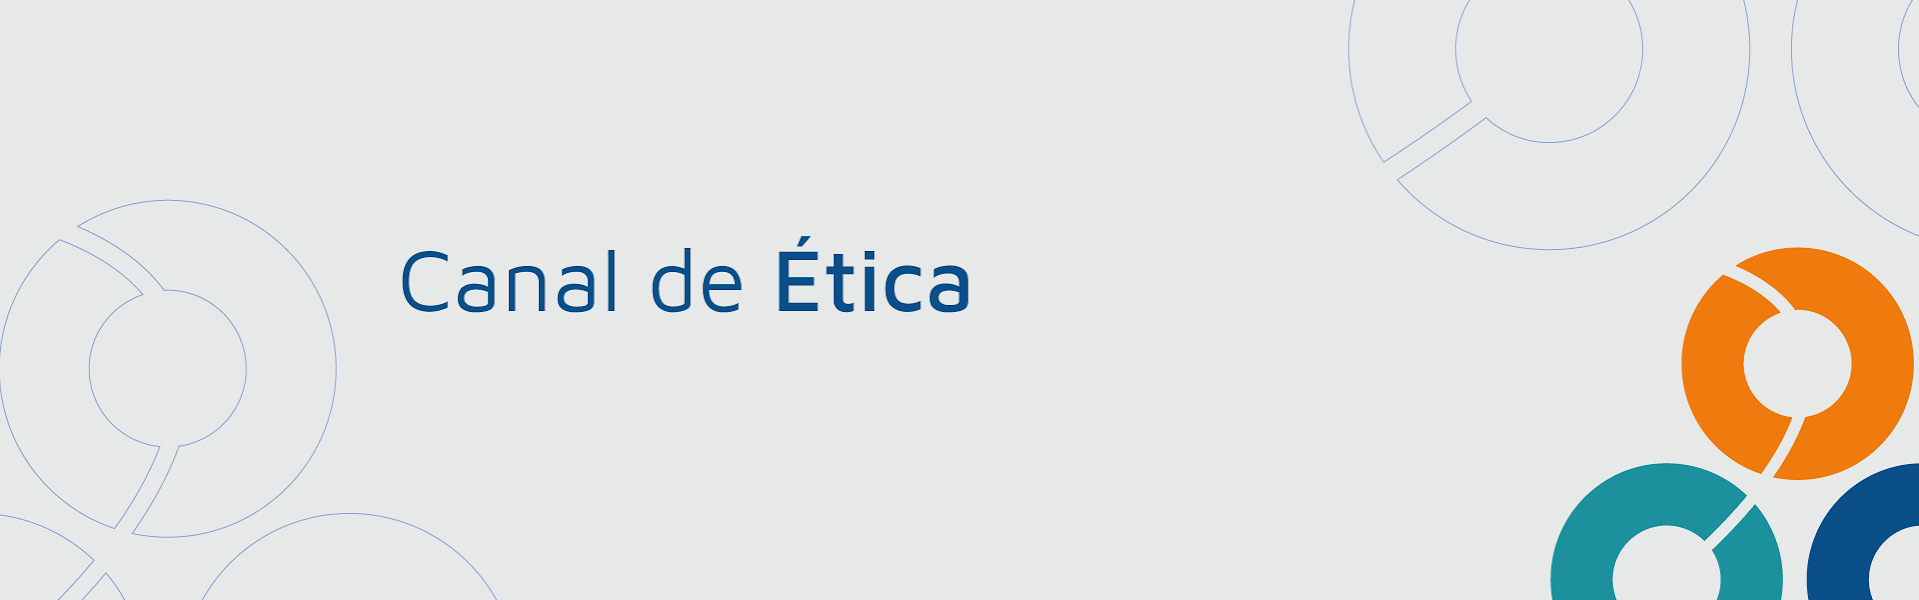 Banner Canal de Ética